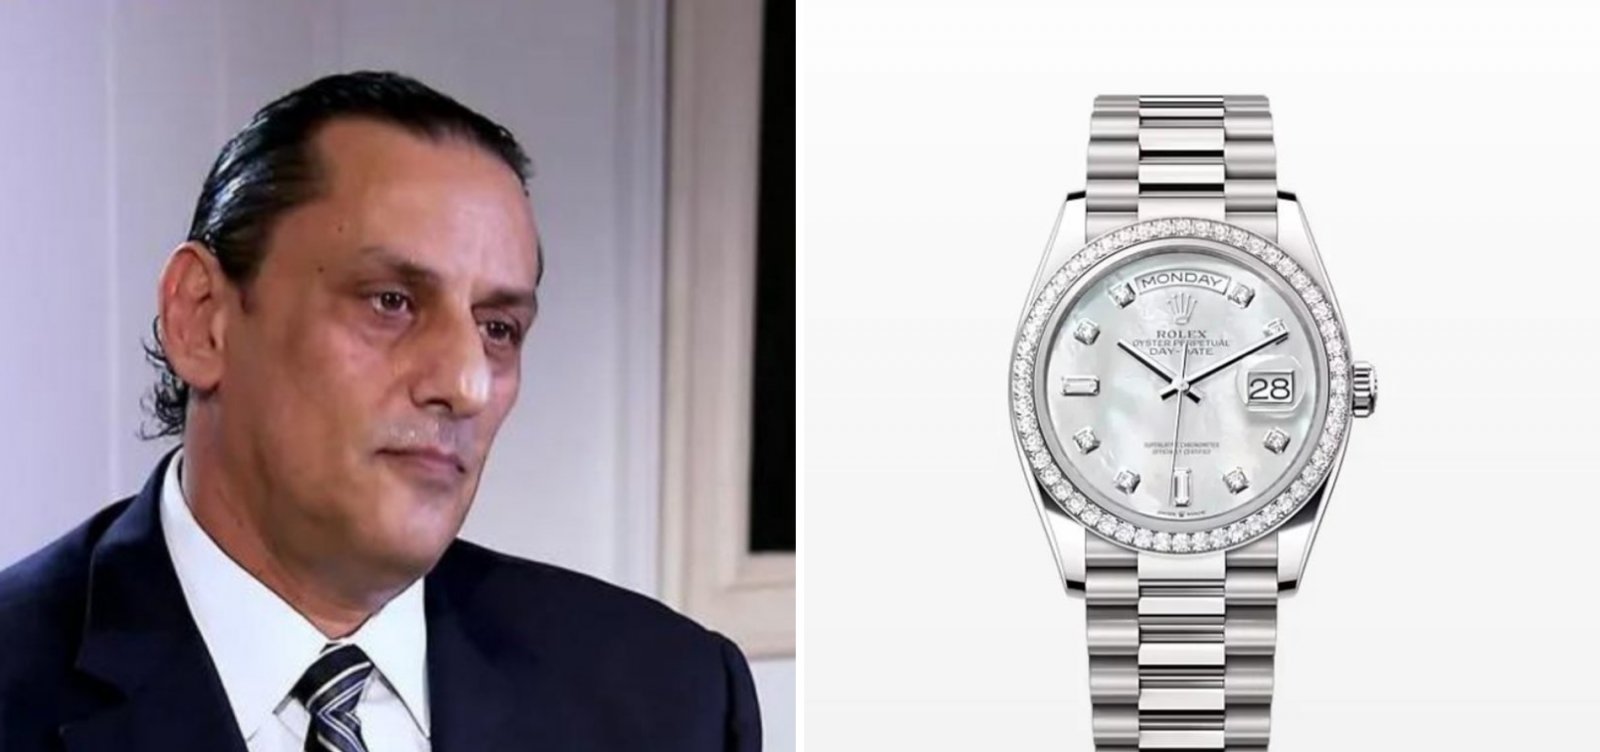 Wassef confirma recompra de Rolex, mas nega participação em esquema ilegal